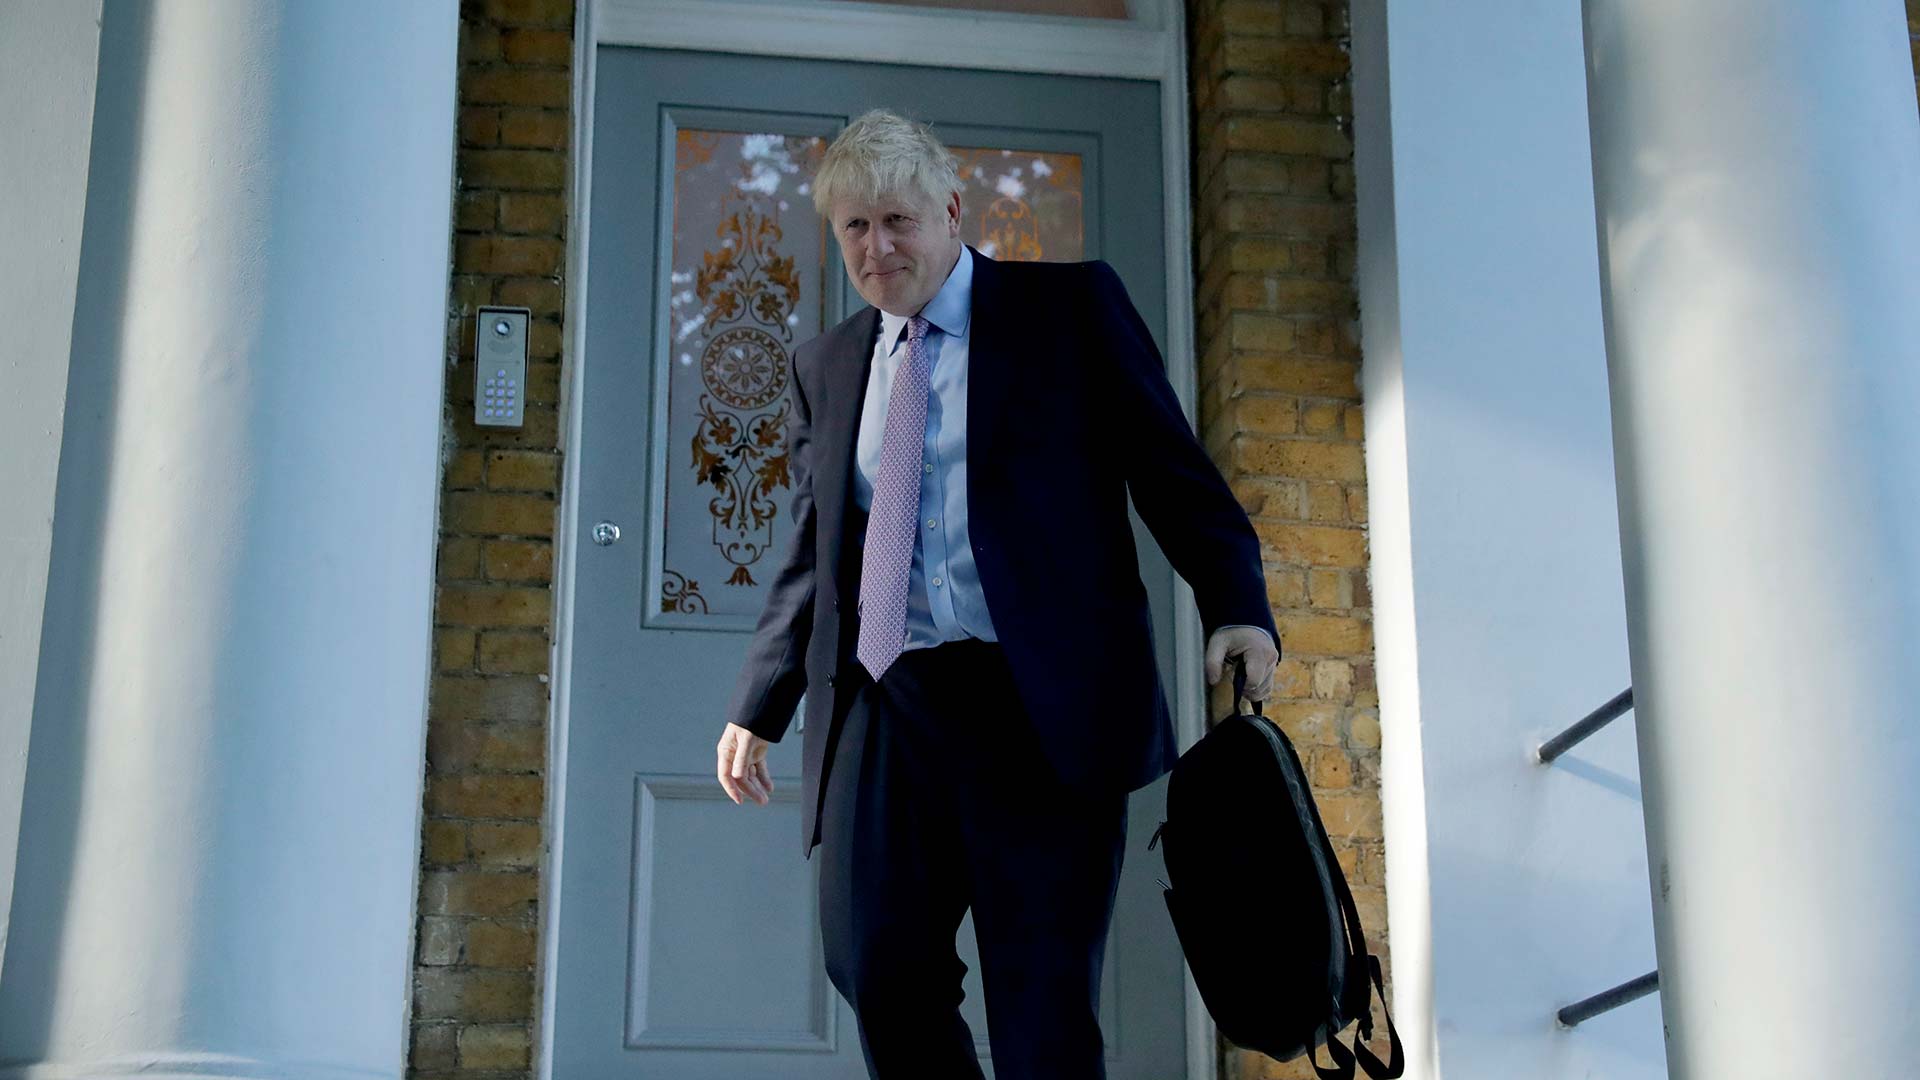 Boris Johnson y Jeremy Hunt se disputarán la sucesión de Theresa May